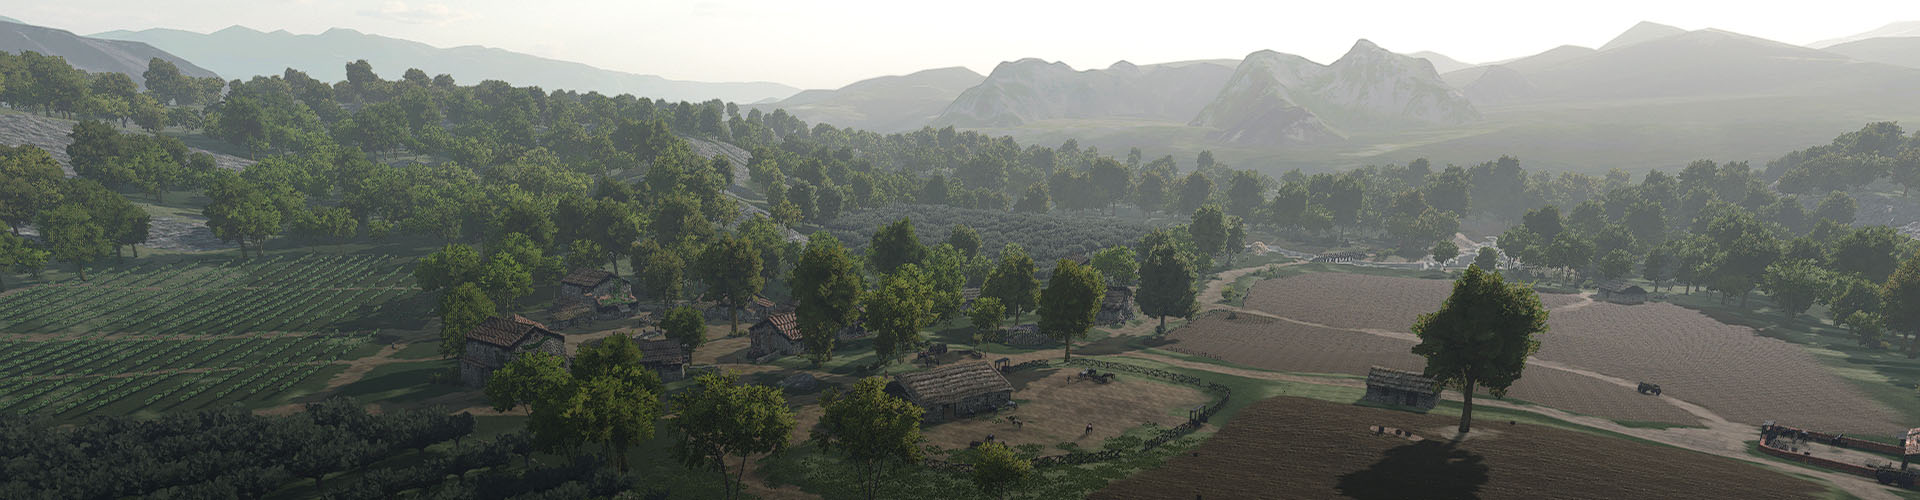 villages s empire 0015 1